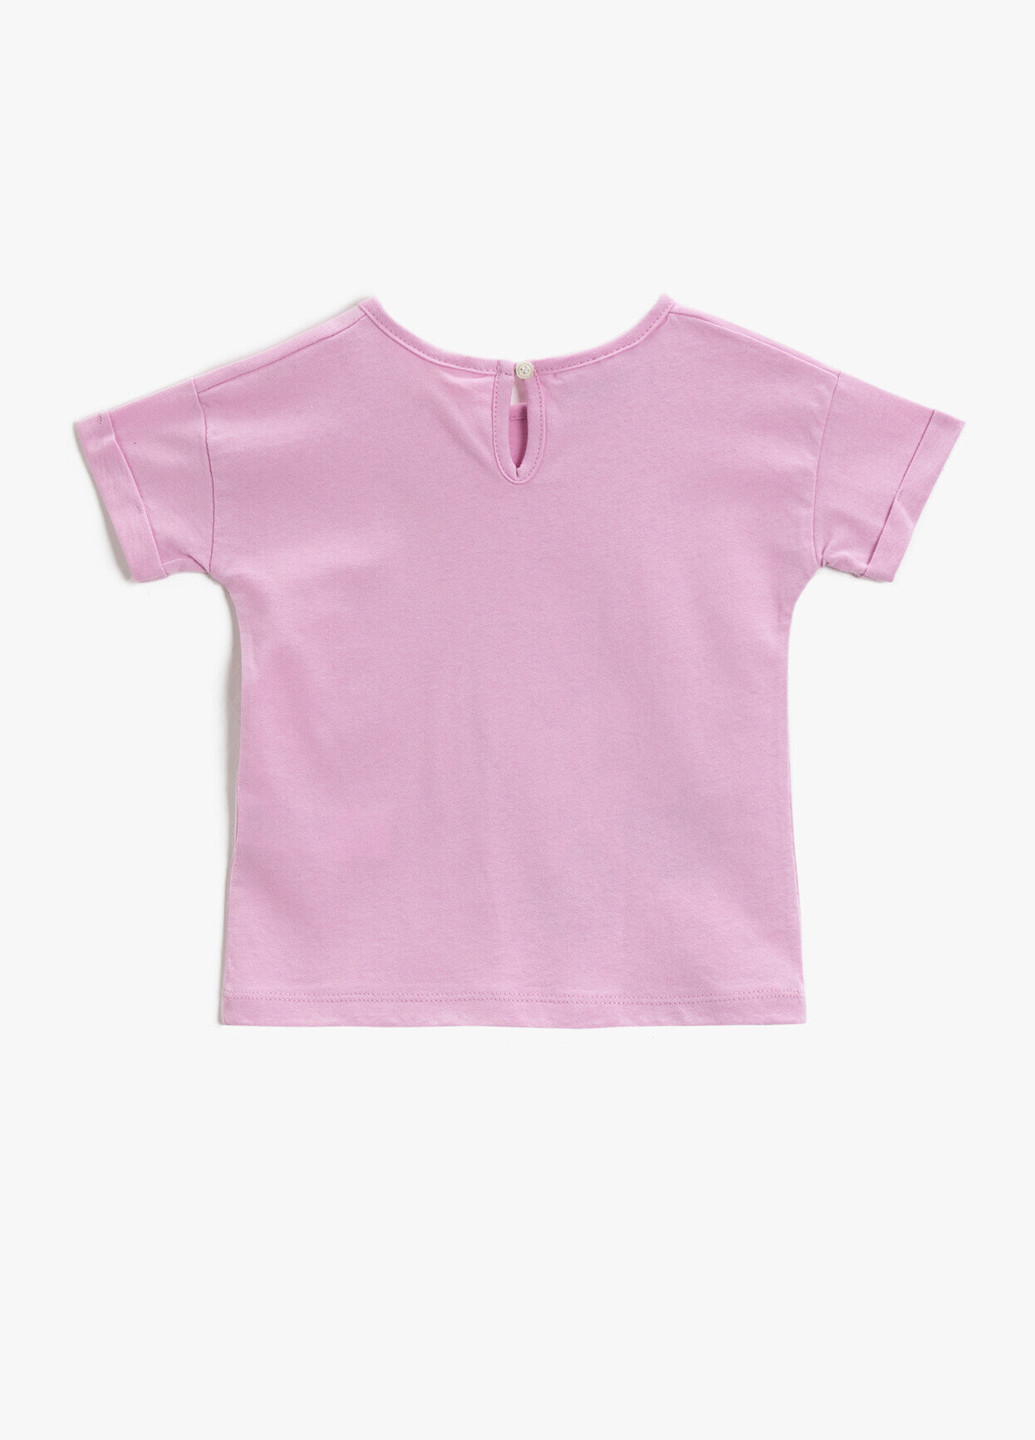 Светло-фиолетовая летняя футболка KOTON